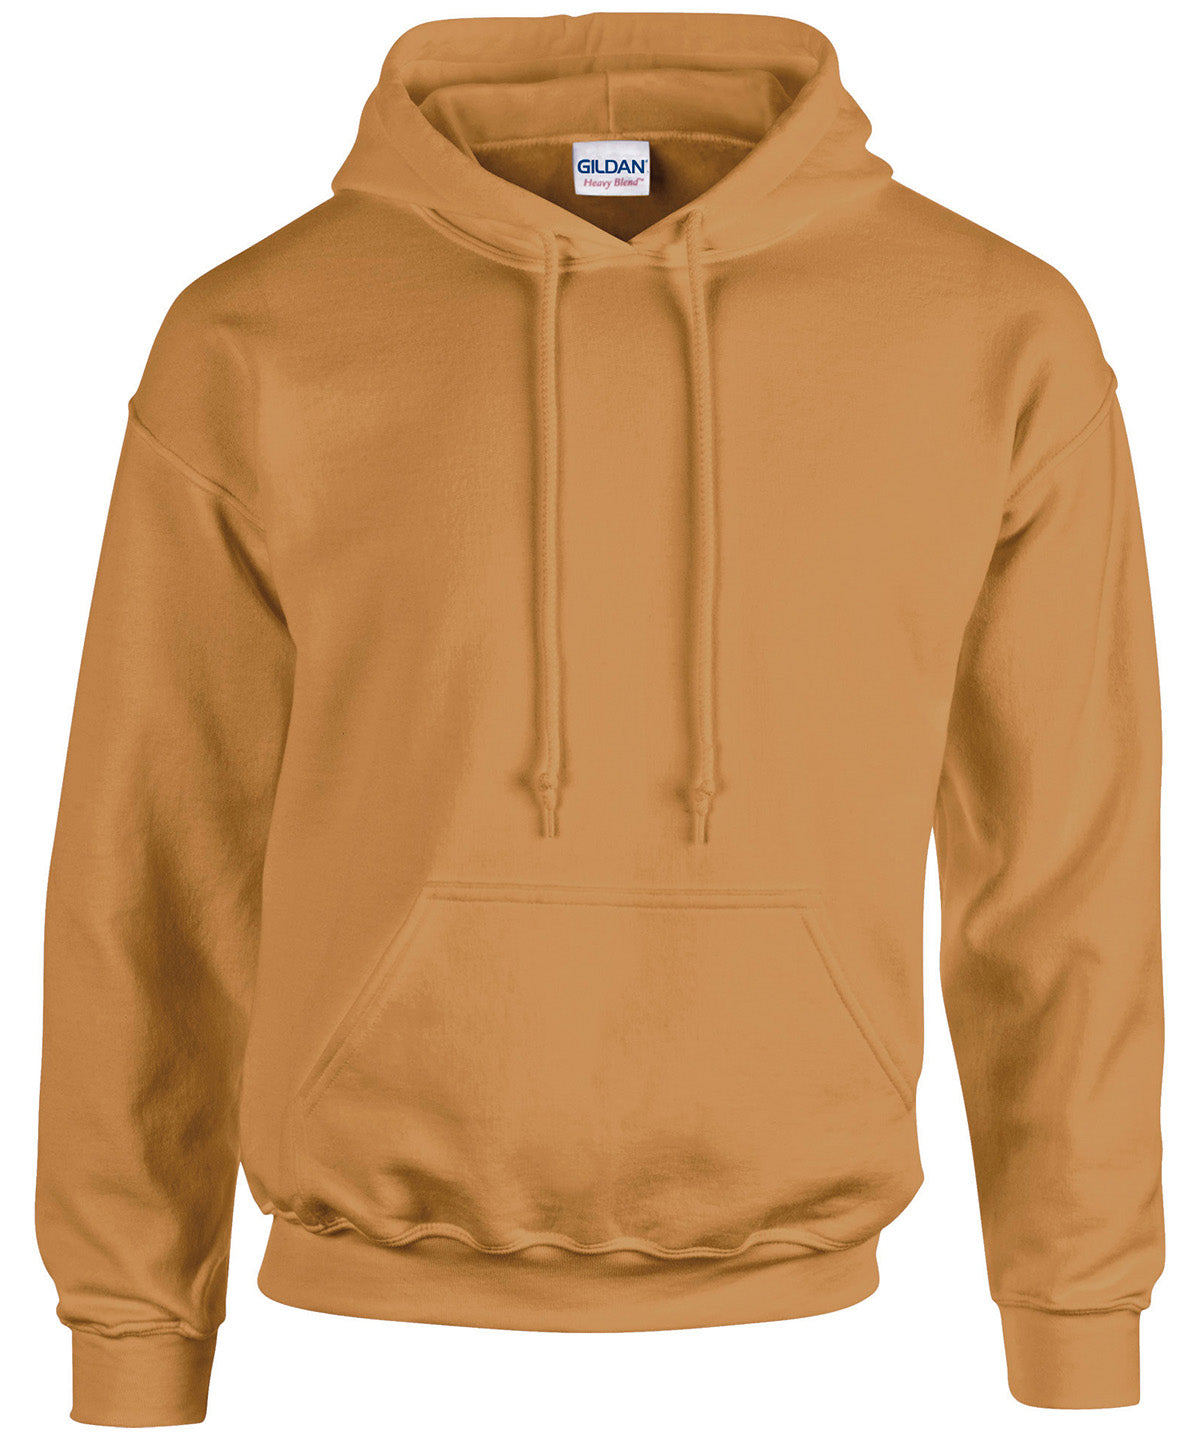 Personalised Hoodies - Black Gildan Heavy Blend™ hooded sweatshirt